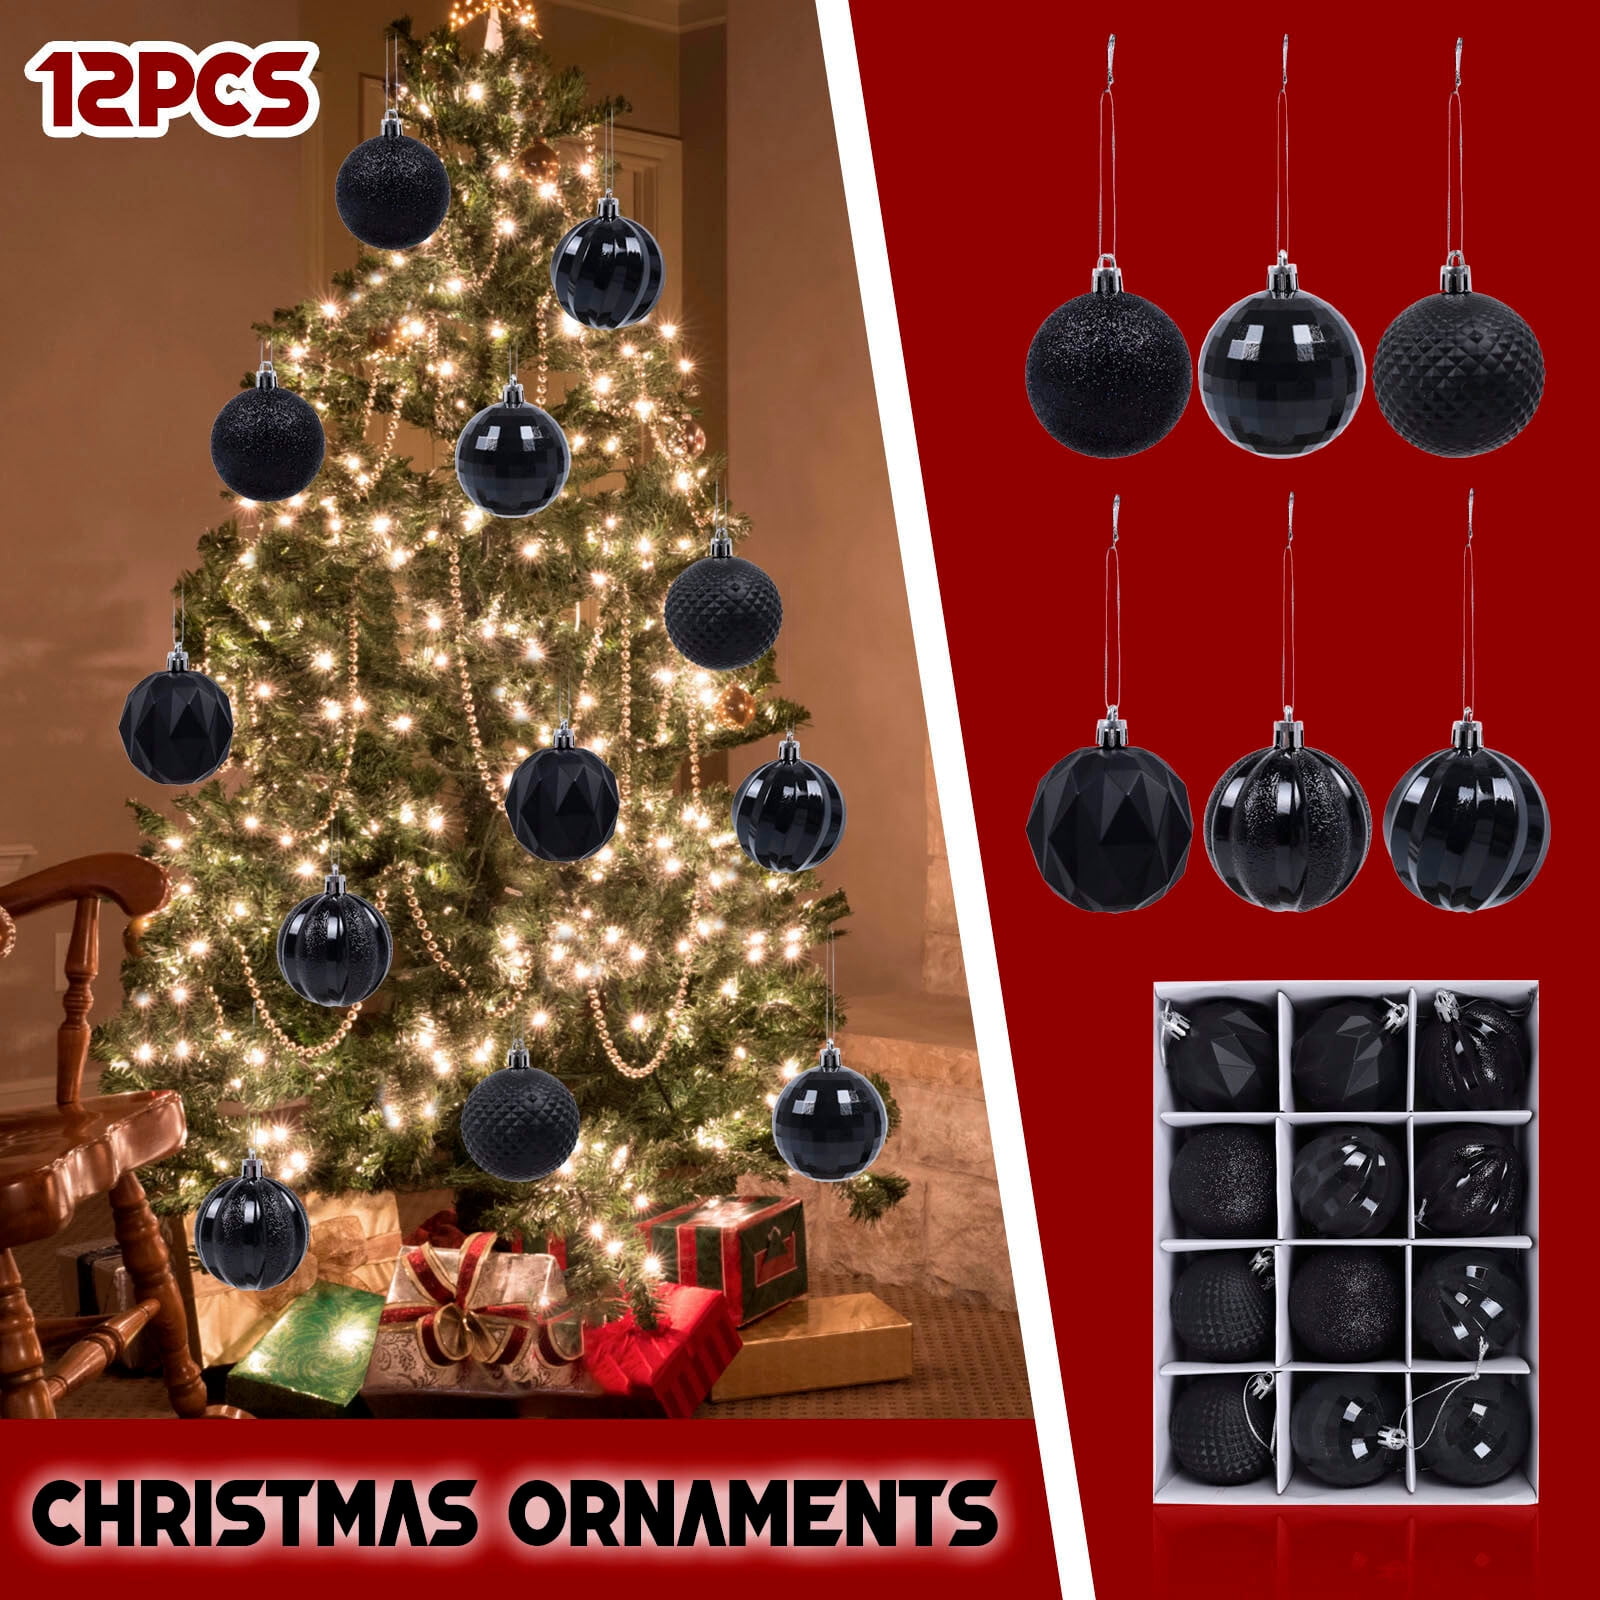 2.36 Black Christmas Balls Ornaments 25 Pcs Shatterproof Christmas  Ornaments Set Halloween Balls Ornaments Black Ornaments for Christmas Tree  Holiday